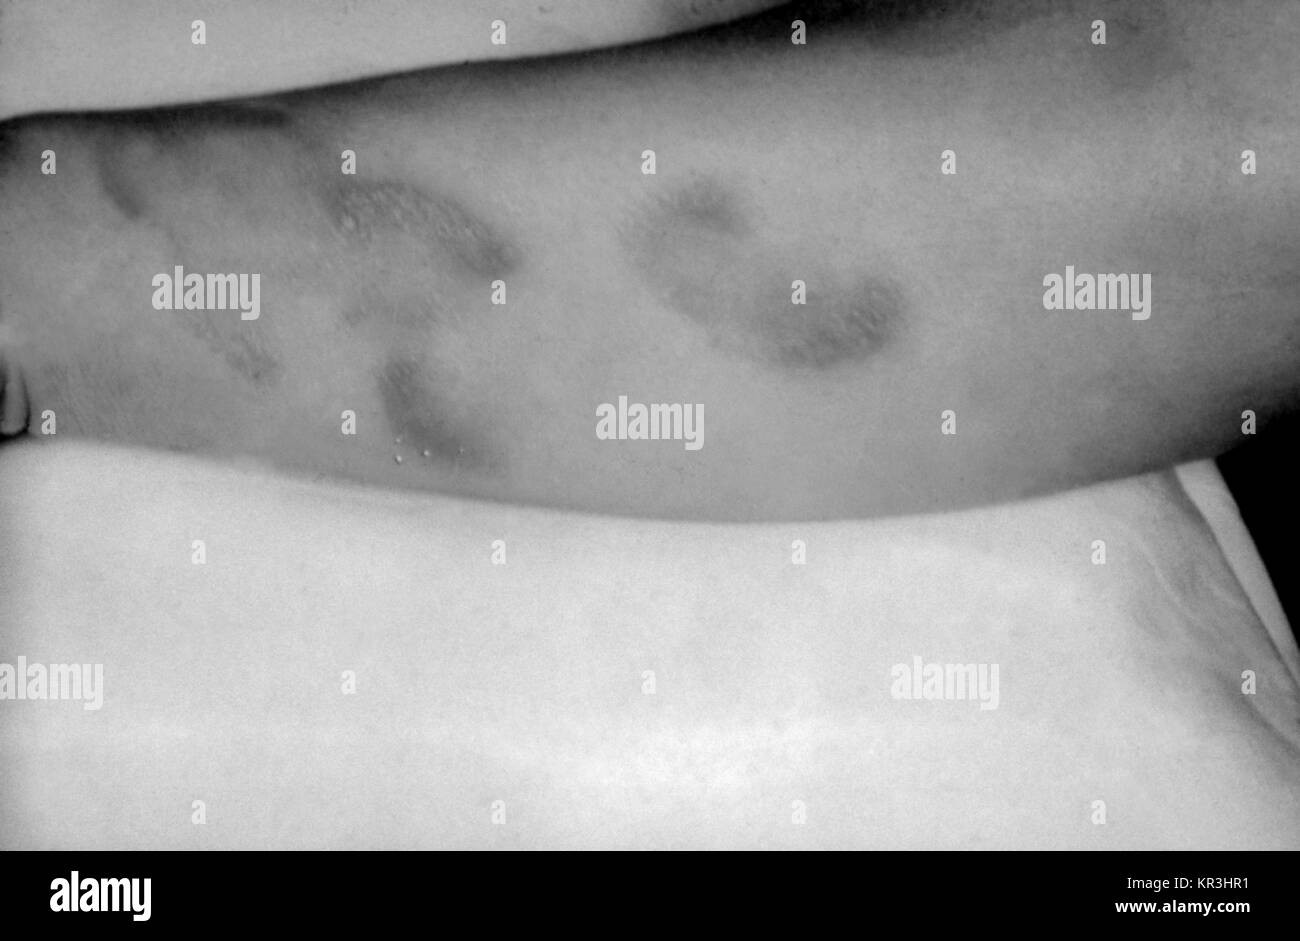 Ein Foto von einem Patienten mit tertiäre Syphilis Darstellung ureas gummatous Läsionen auf der Oberfläche der rechten Arm. Tertiäre Syphilis tritt auf, viele Jahre nach der unbehandelten primären Syphilis, 1971. Gummas oder innere Gewebe Granulation, Form und zu schweren Schäden an der Haut, Knochen, Leber und andere körperliche Organe, oder Regionen. Mit freundlicher CDC/Susan Lindsley. Stockfoto